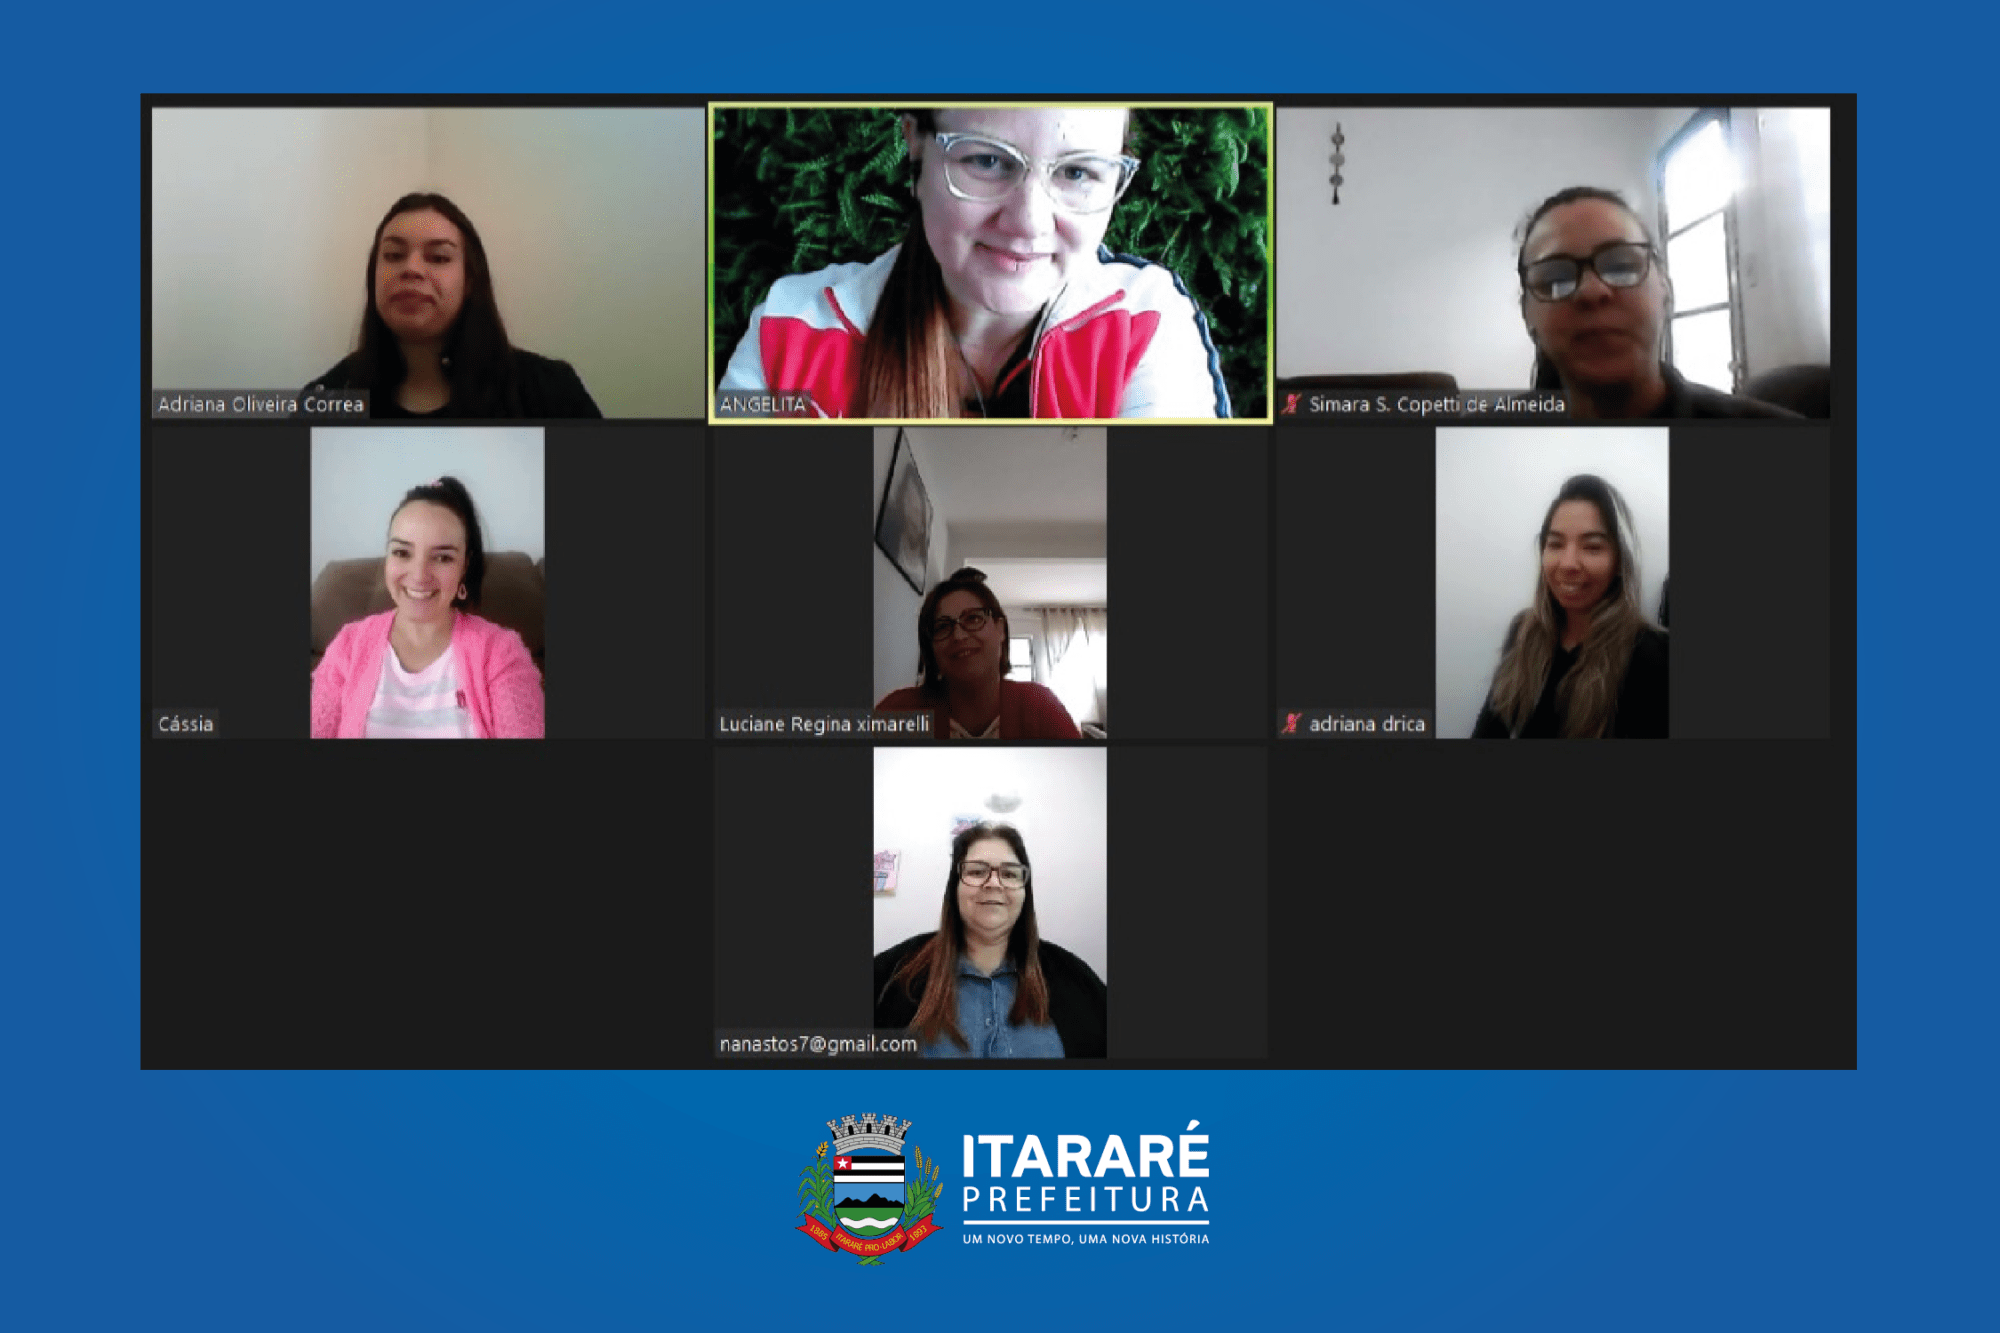 Prefeitura de Itararé (SP) promove capacitação on-line com psicóloga a educadores